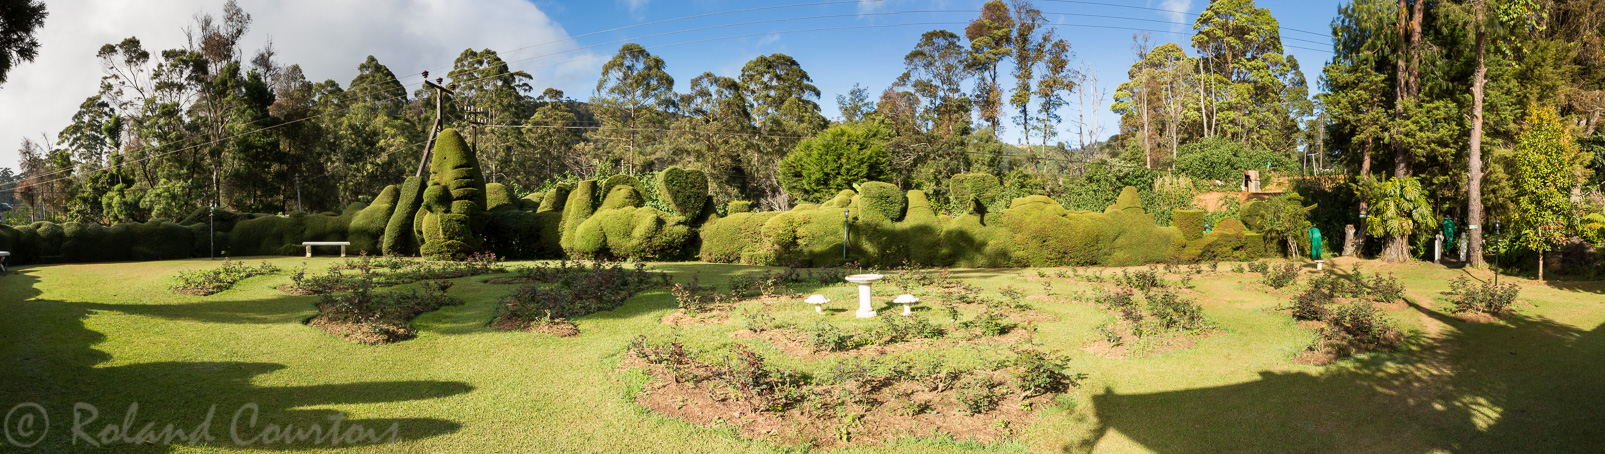 Hôtel San Andrews. Le jardin, avec ses pelouses en terrasse et ses meubles en fer forgé, est idéal pour le thé de l’après-midi.